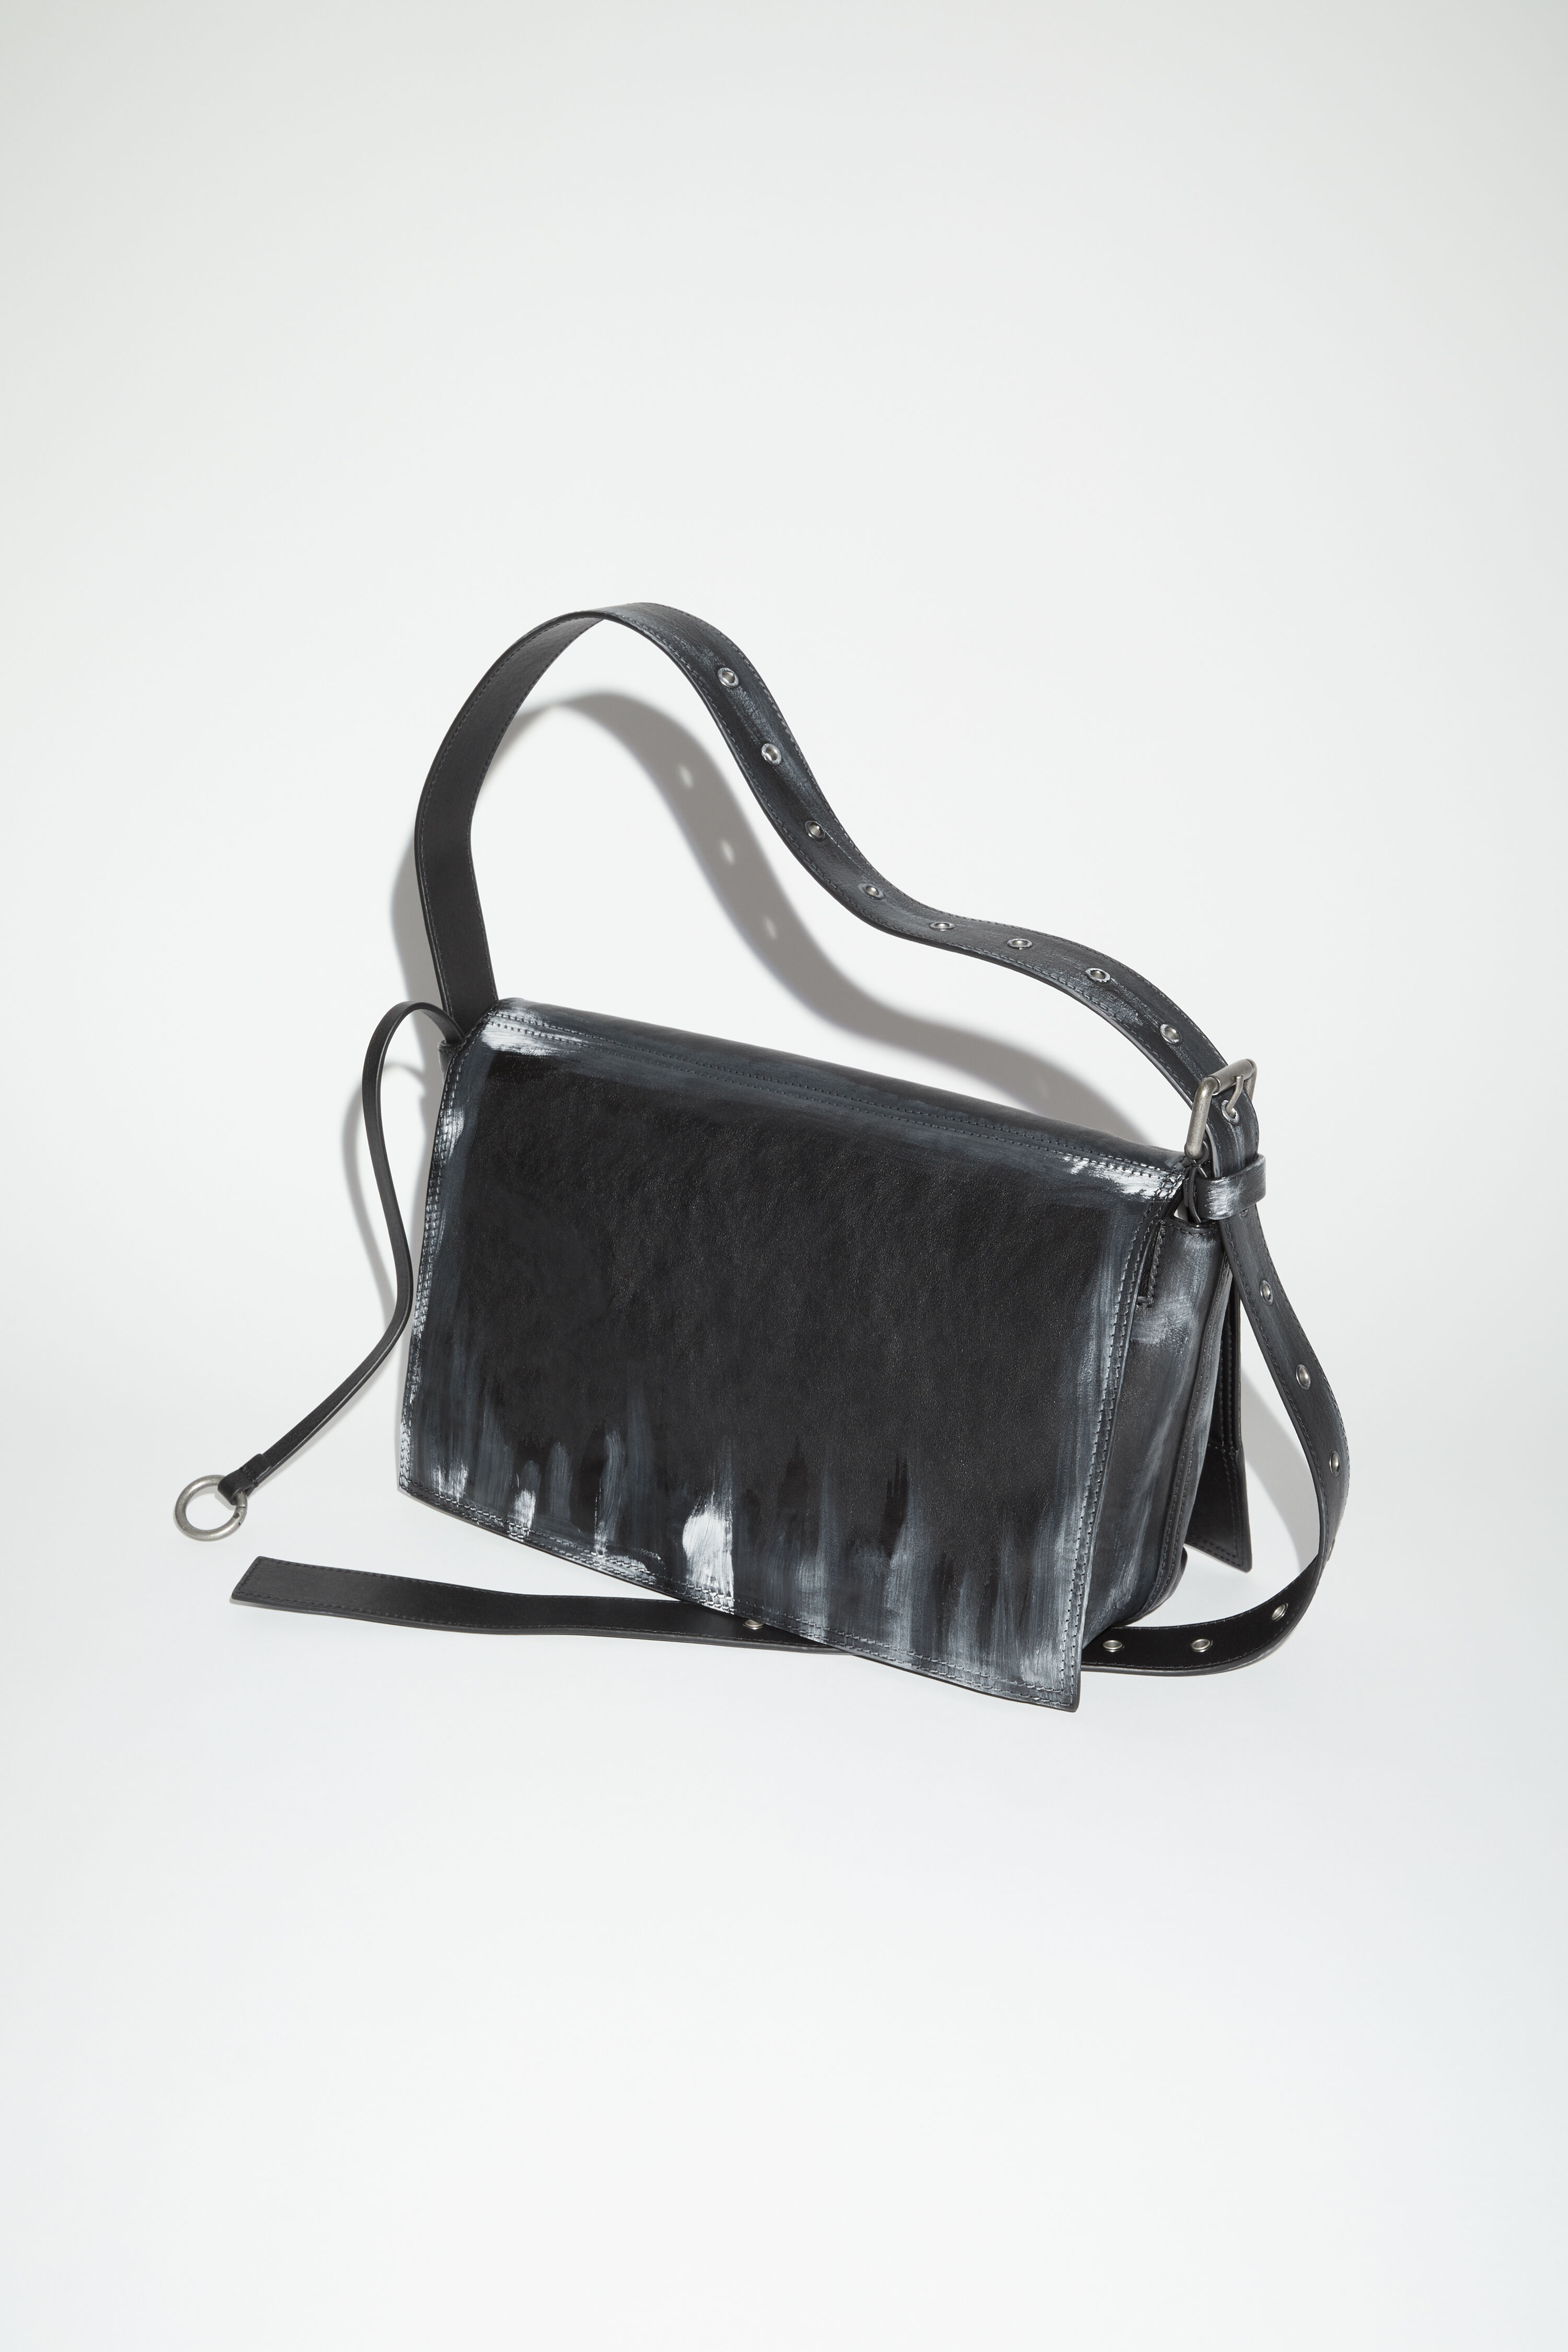 Acne Studios - Leather shoulder bag - Black